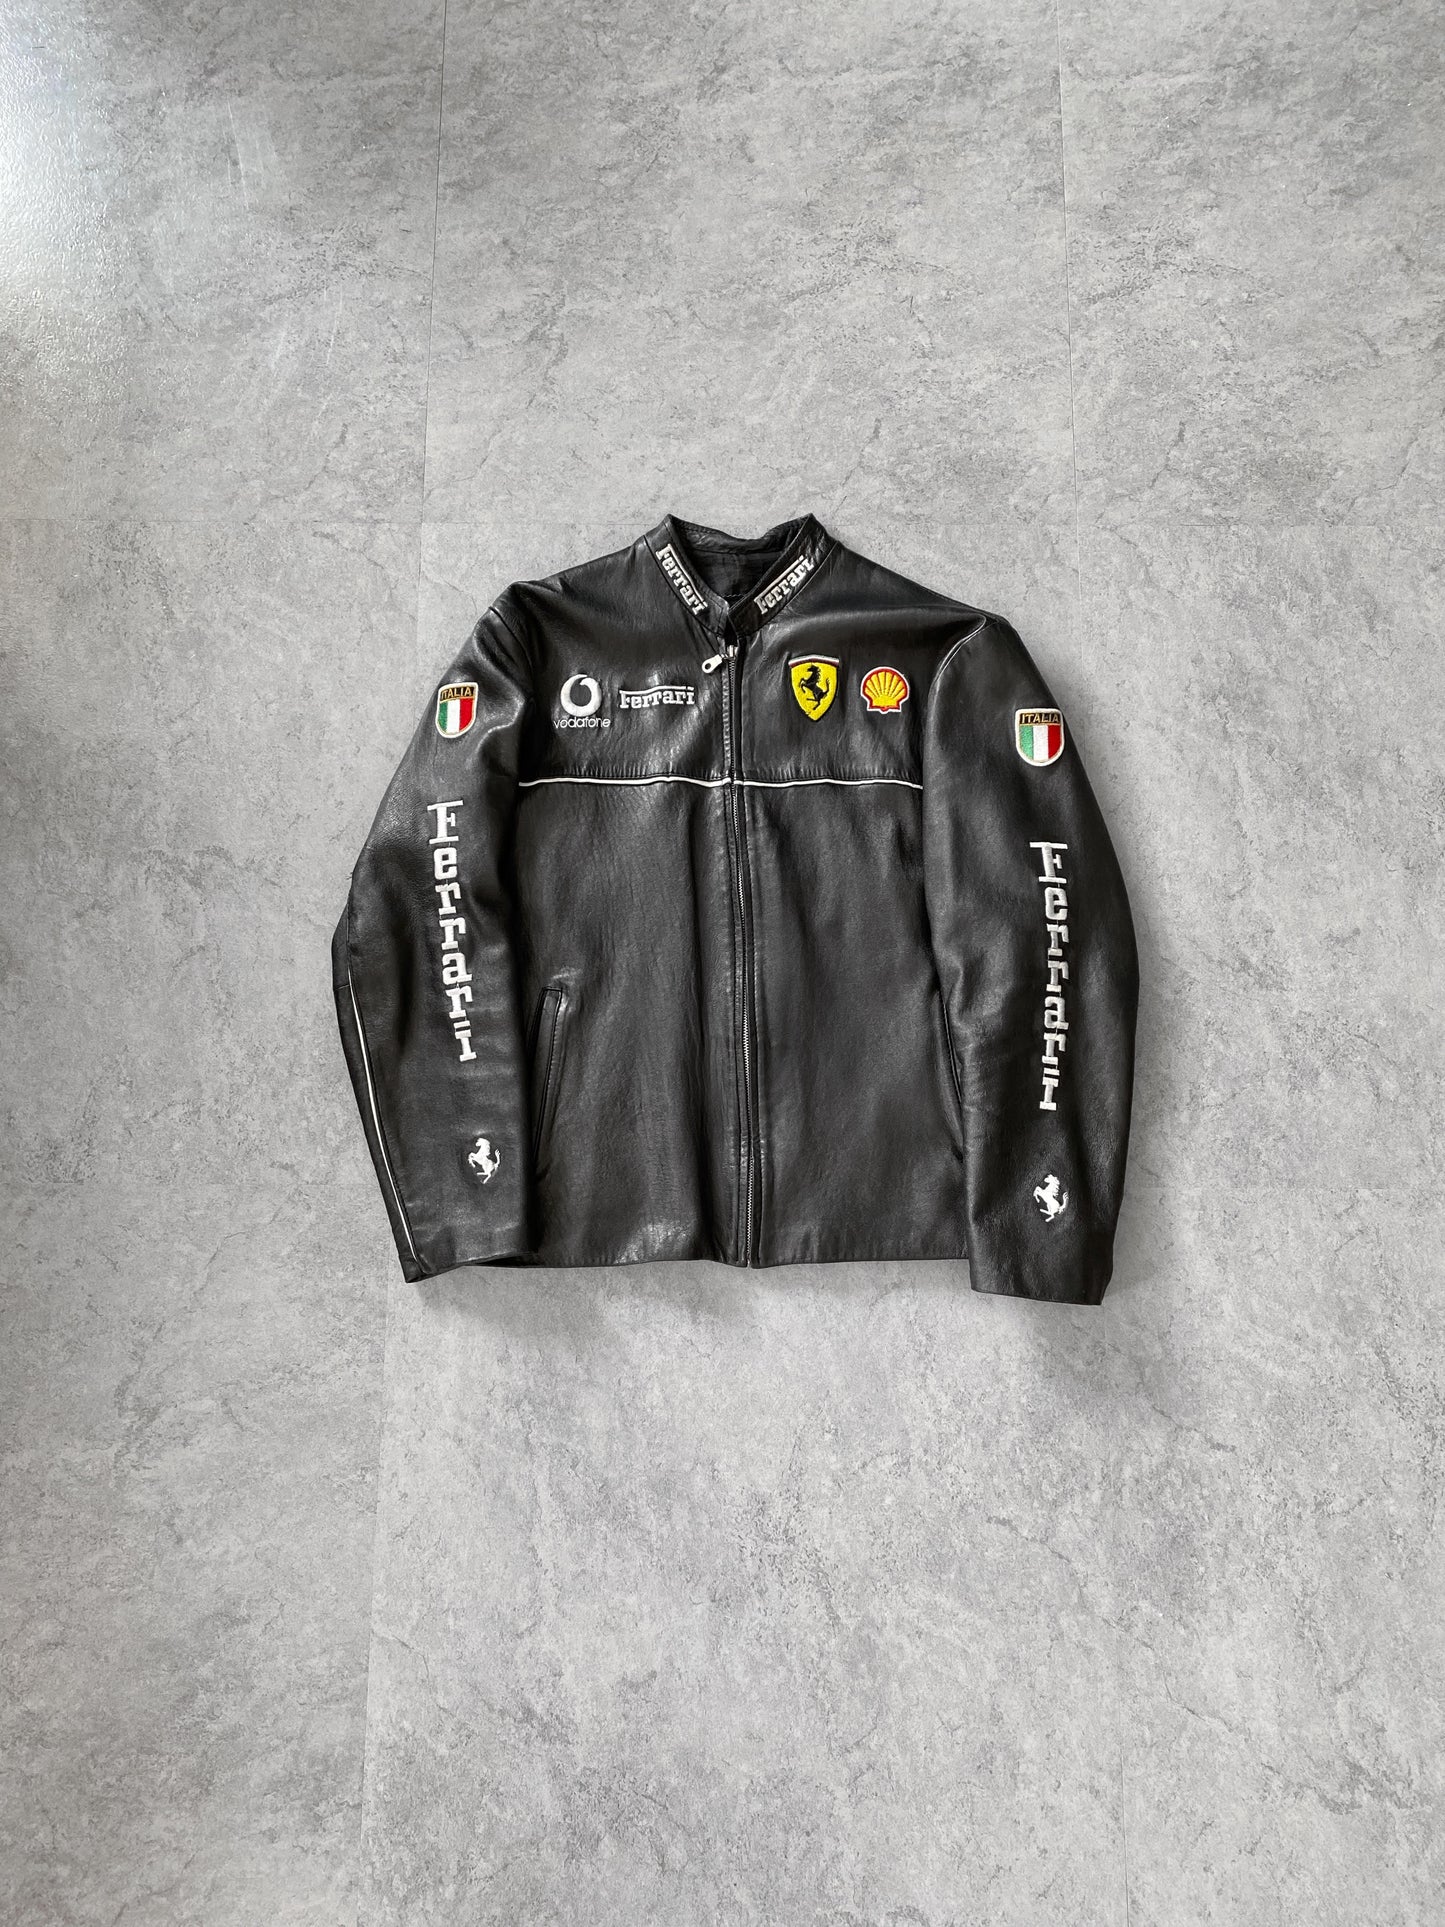 Vintage Ferrari Leather Racing Jacket